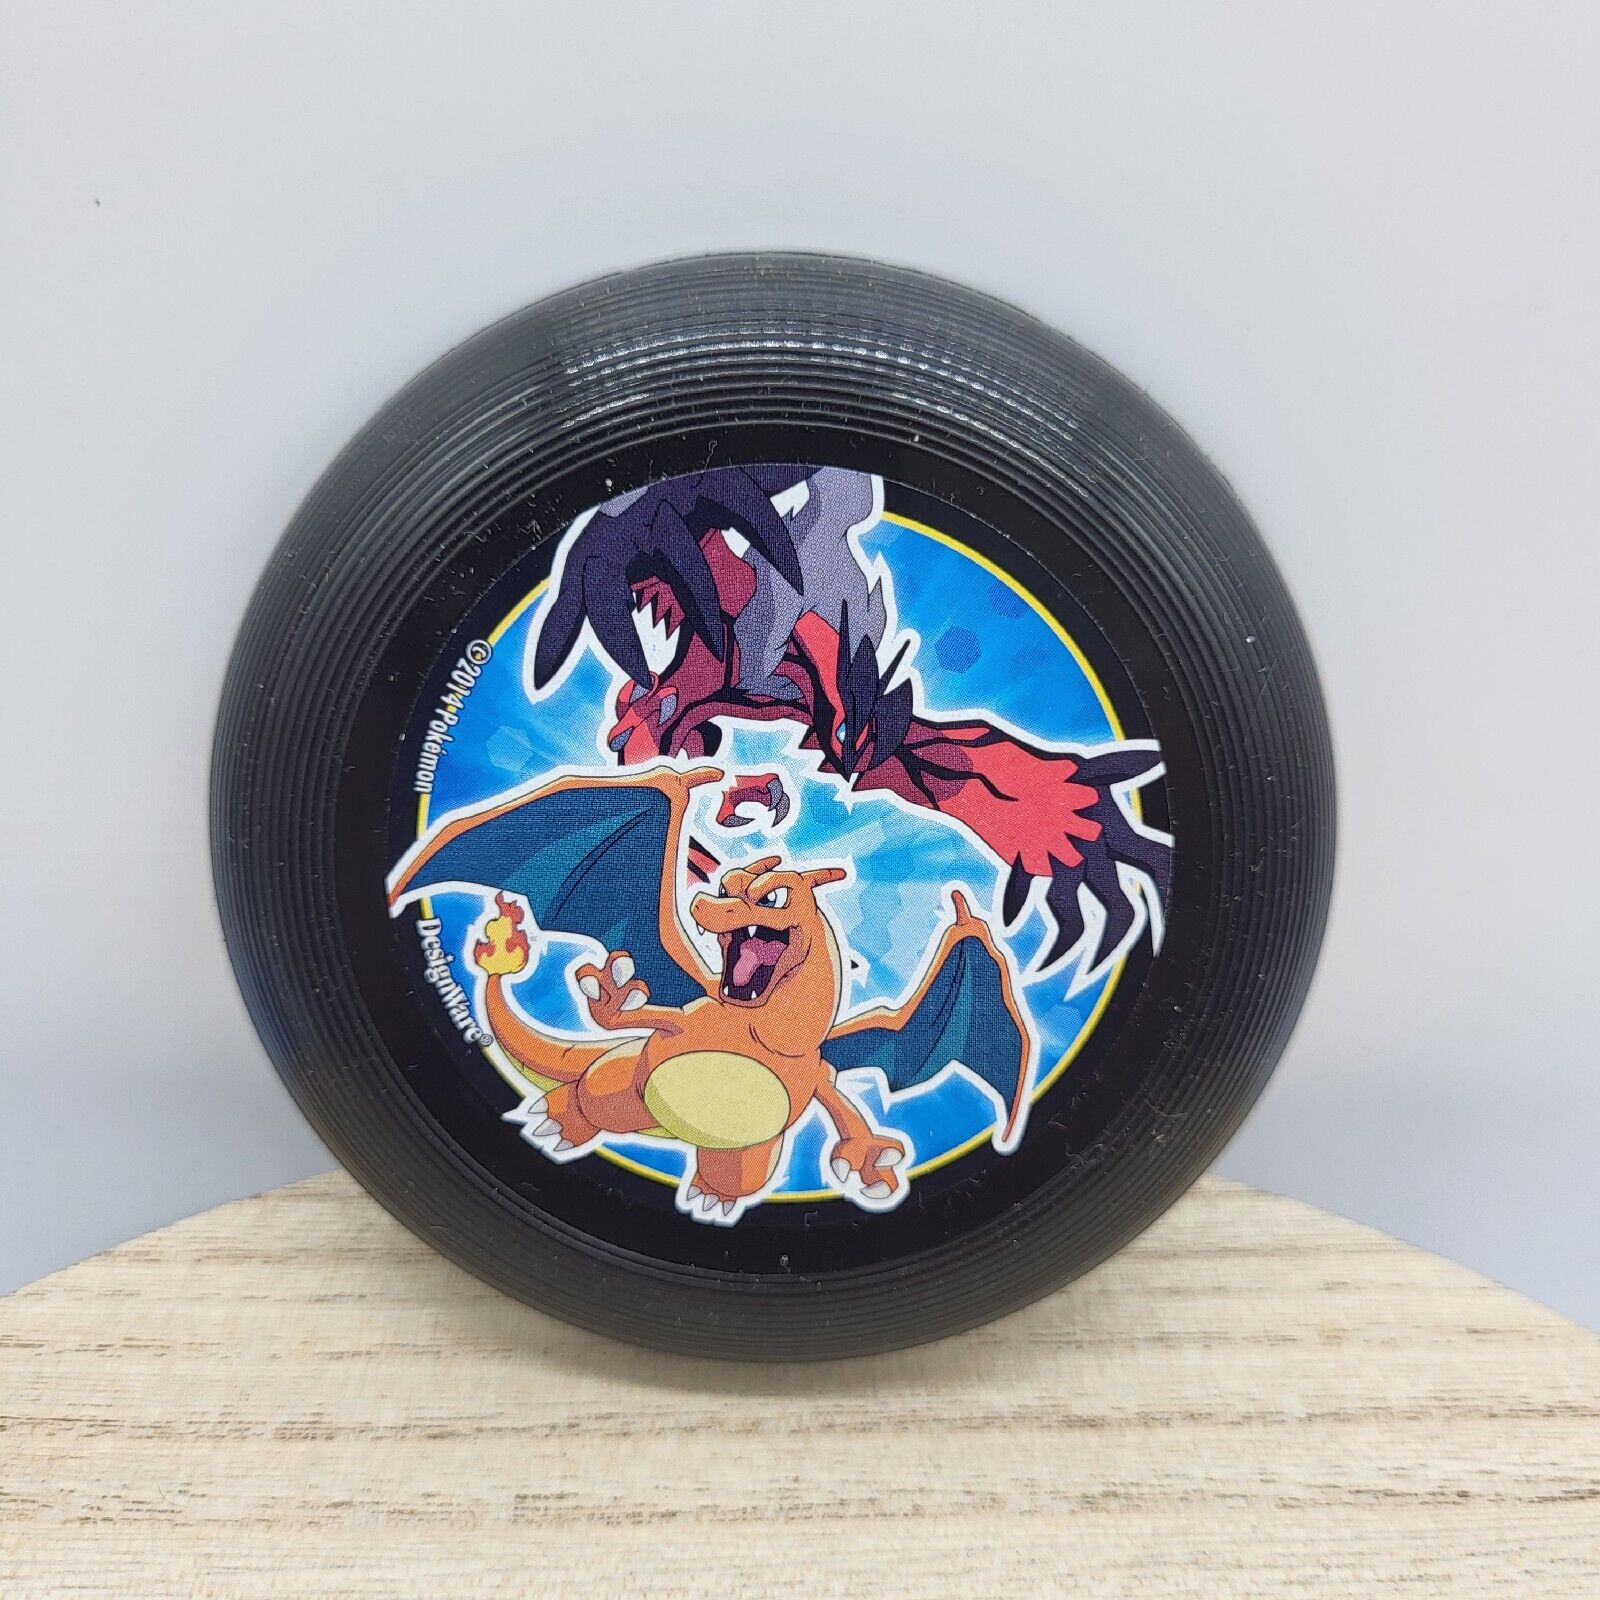 Designware 2014 Pokemon Mini-Frisbee - Black - Charizard Pokémon